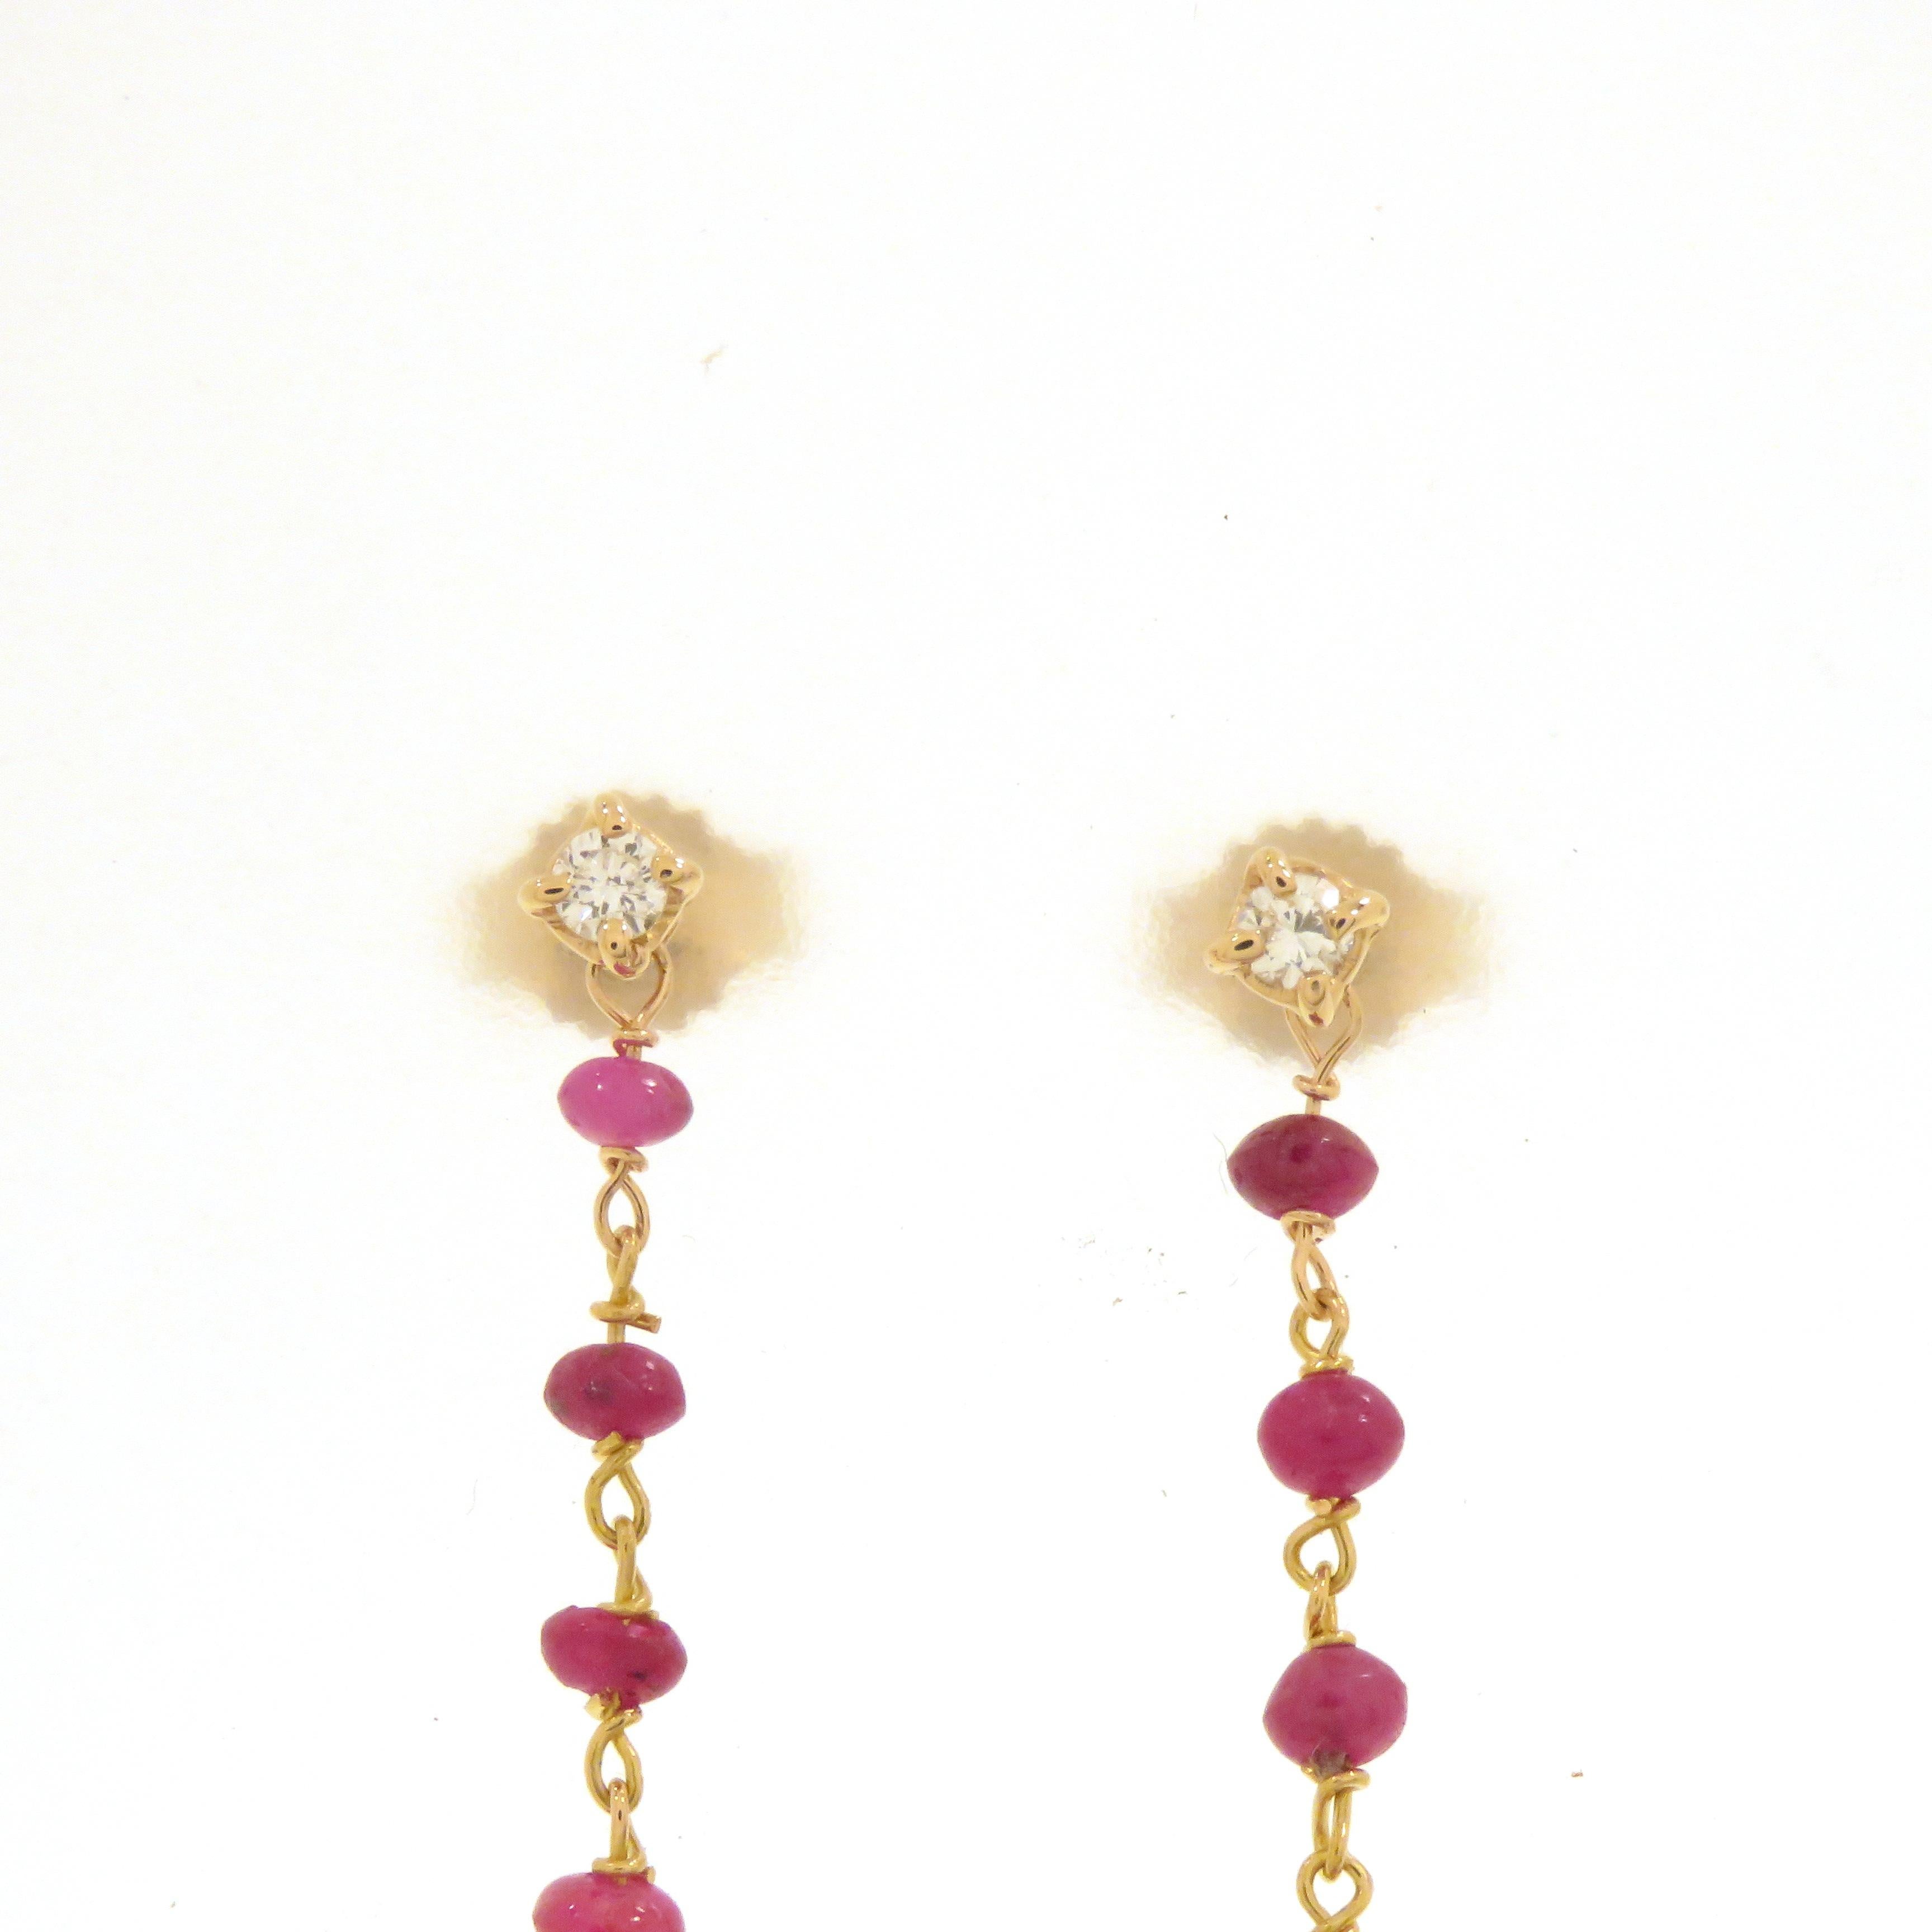 Orecchini in oro rosa 18k realizzati a mano con due diamanti taglio brillante 2x0.05 totale 0.10 ct. incastonati in un griffe con galleria e 11 rubini per orecchino incastonati a rosario. L'attacco dell'orecchino è a perno con farfalla. Les